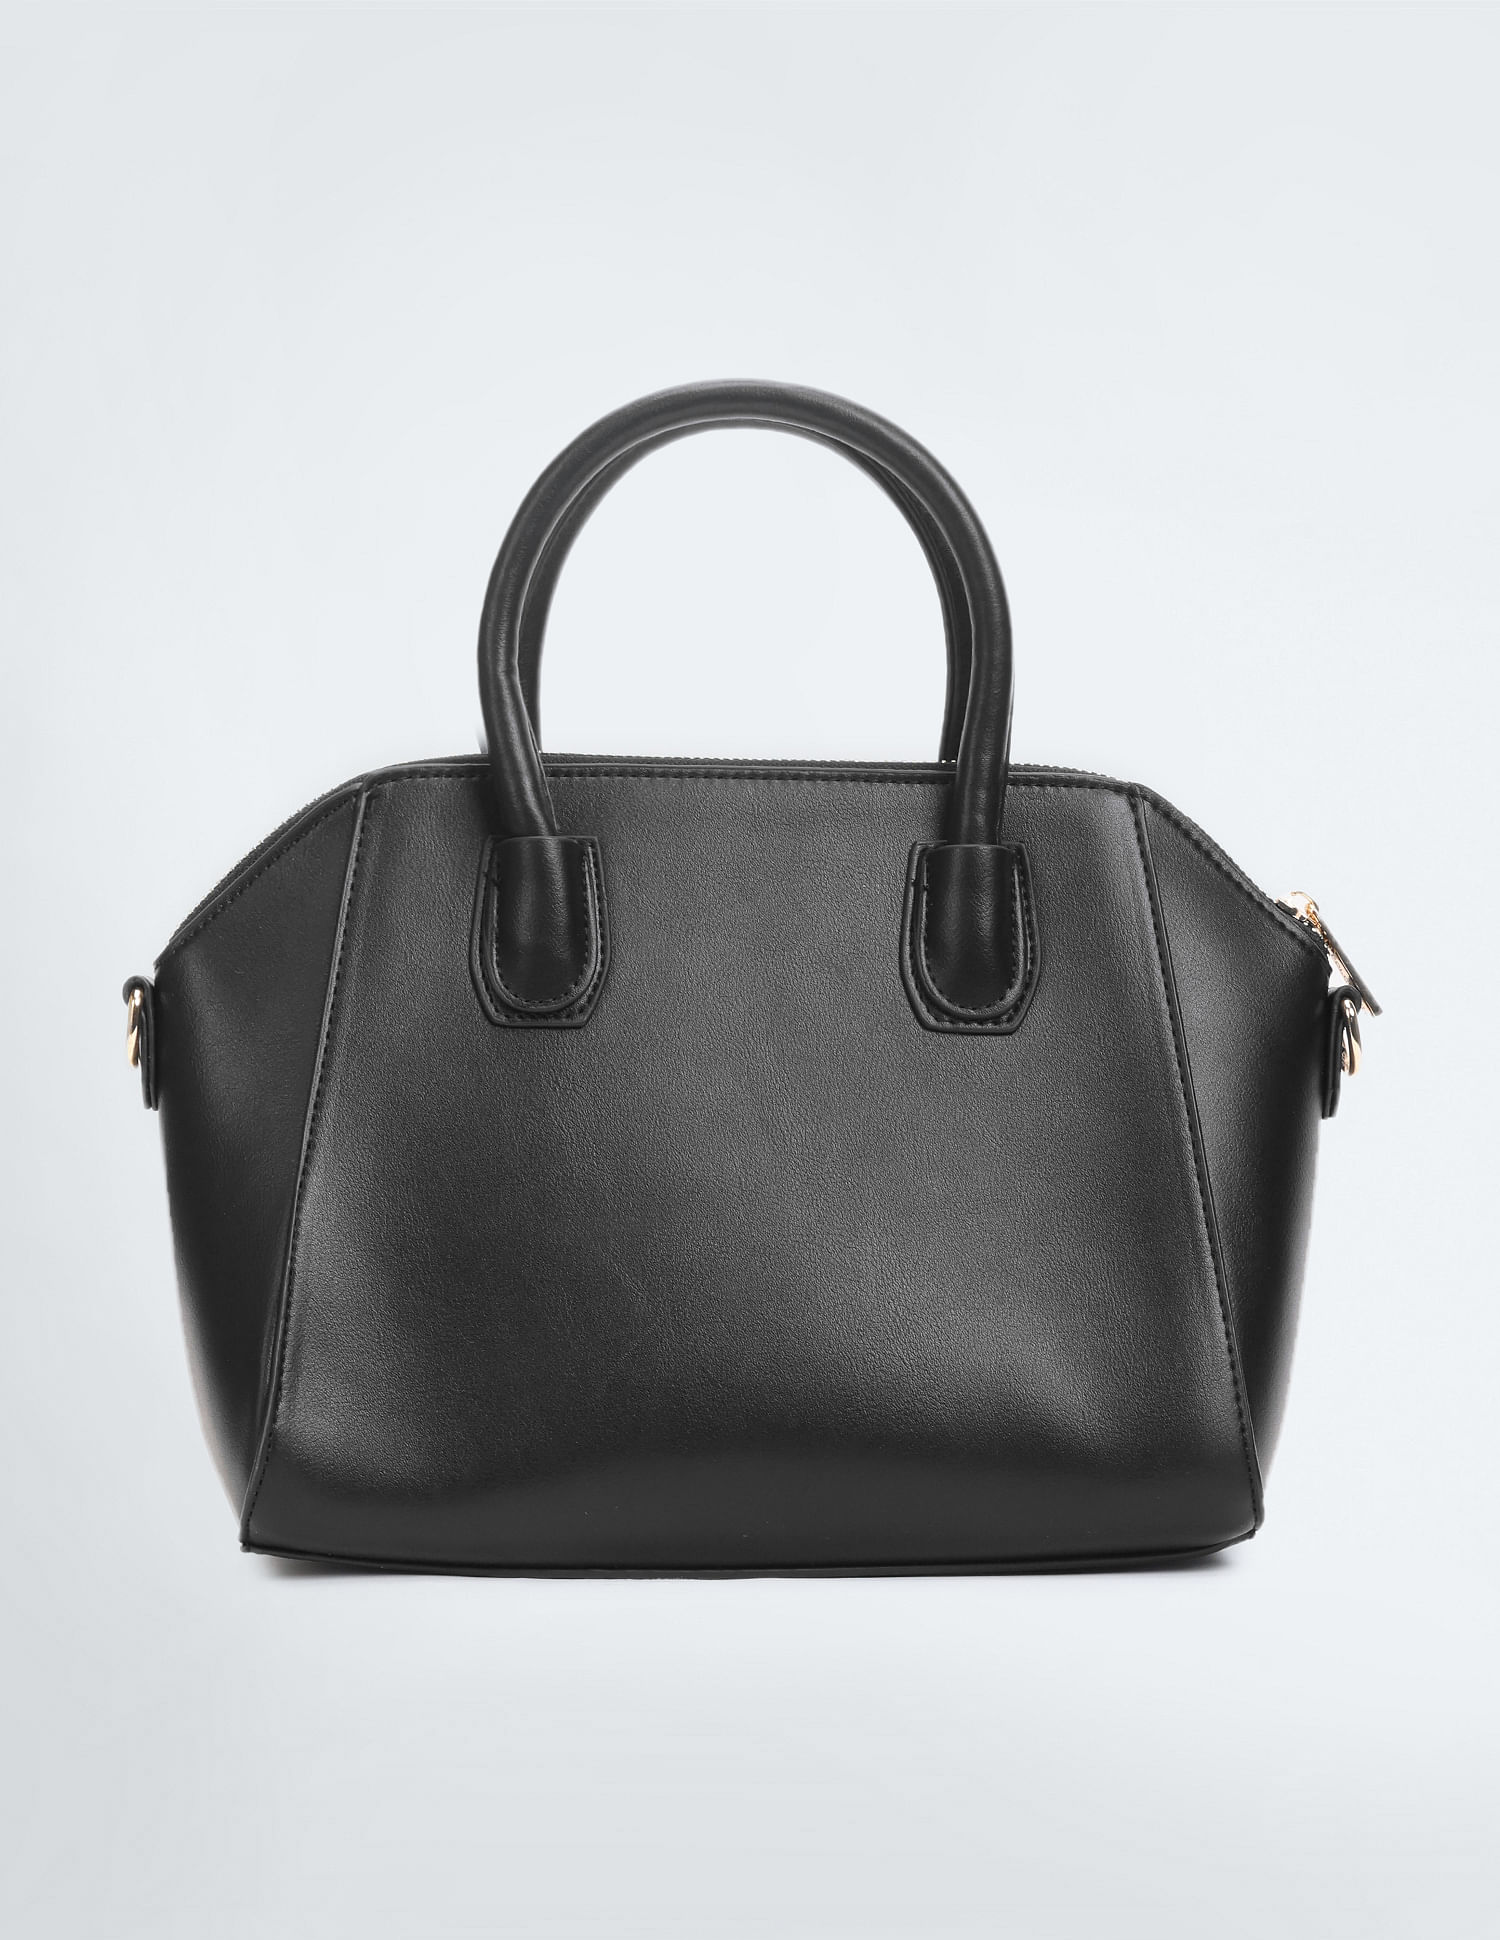 JUNO Top-handle Handbag for Women (Grey) : Amazon.in: Shoes & Handbags